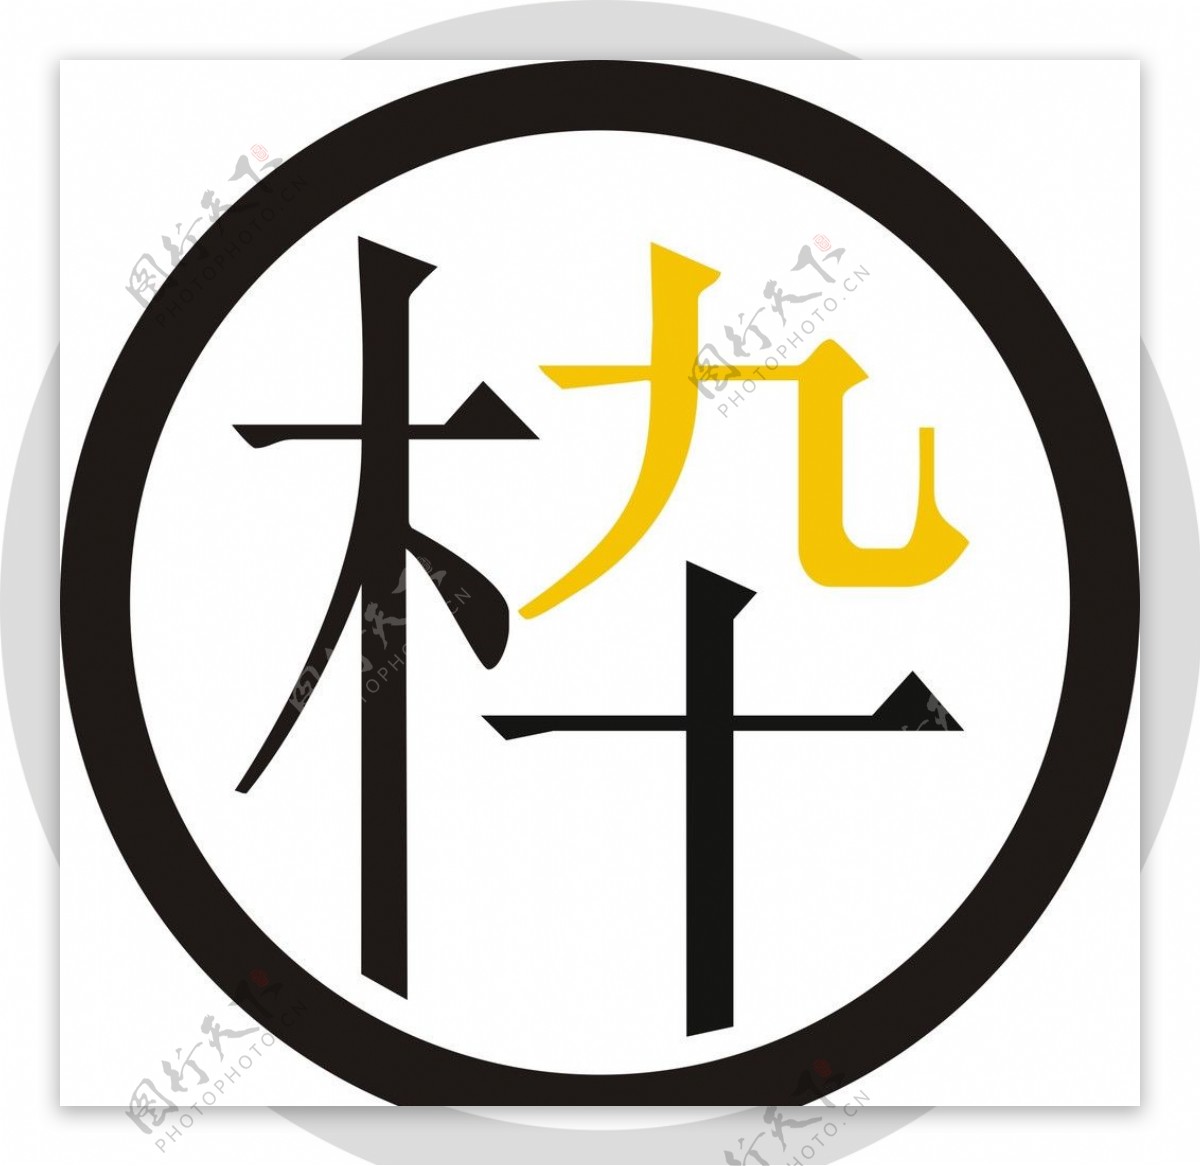 木九十logo图片